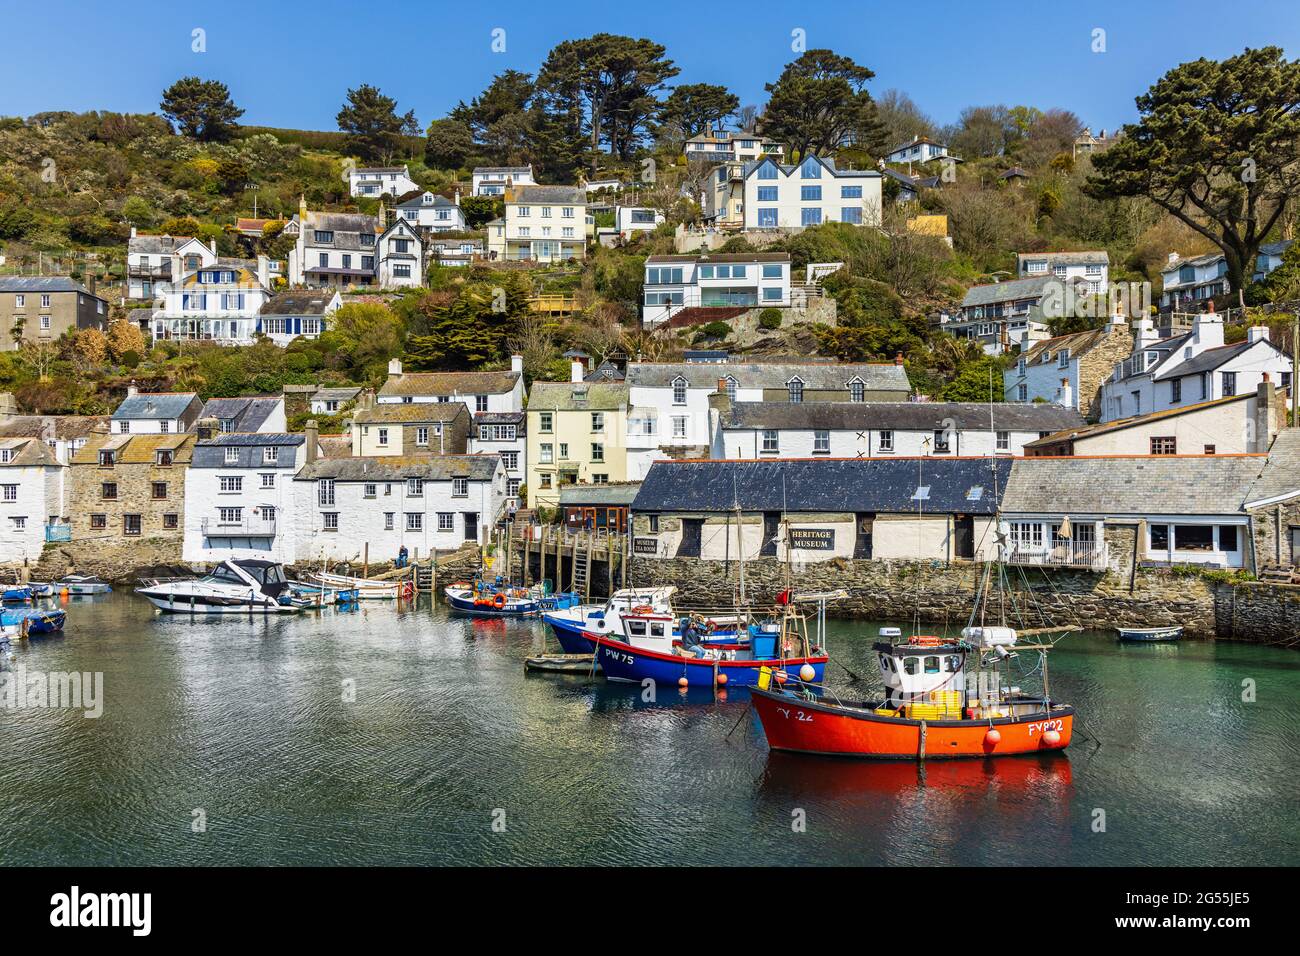 Bateaux de pêche dans le port de Polperro, un charmant et pittoresque village de pêcheurs dans le sud-est de Cornwall. Banque D'Images